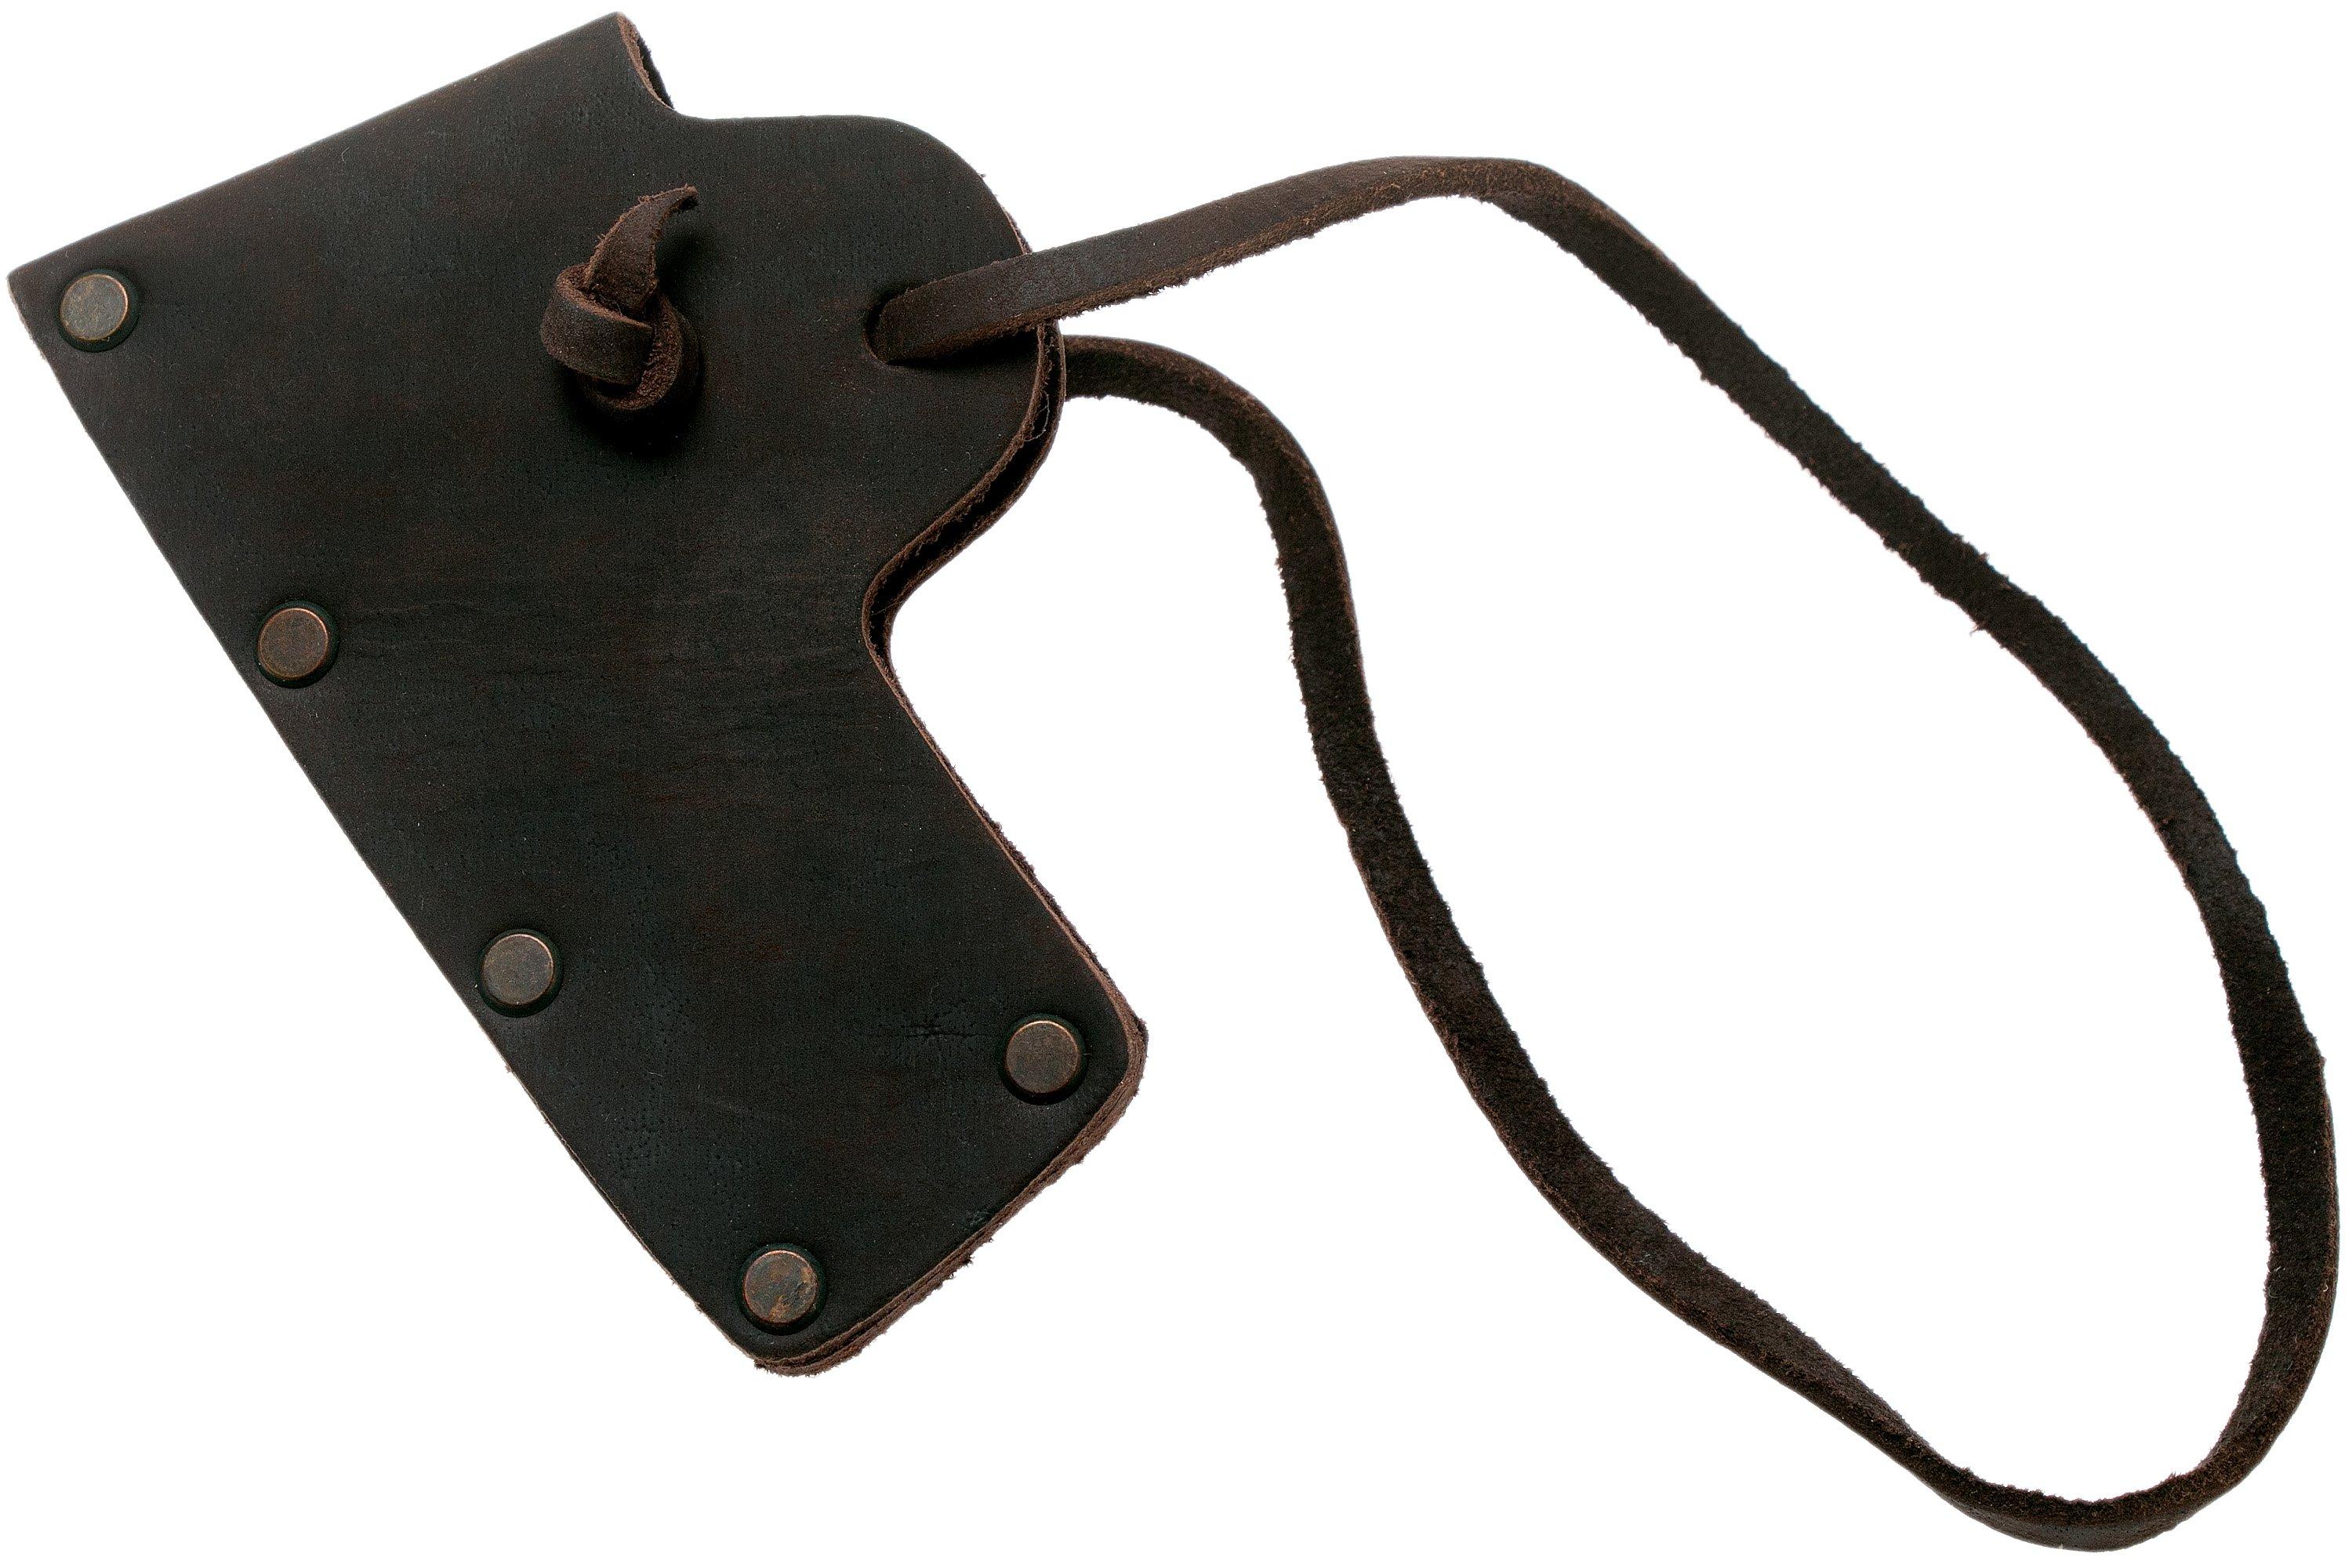 Casstrom Axe loop / étui ceinture pour hache en cuir brun cognac